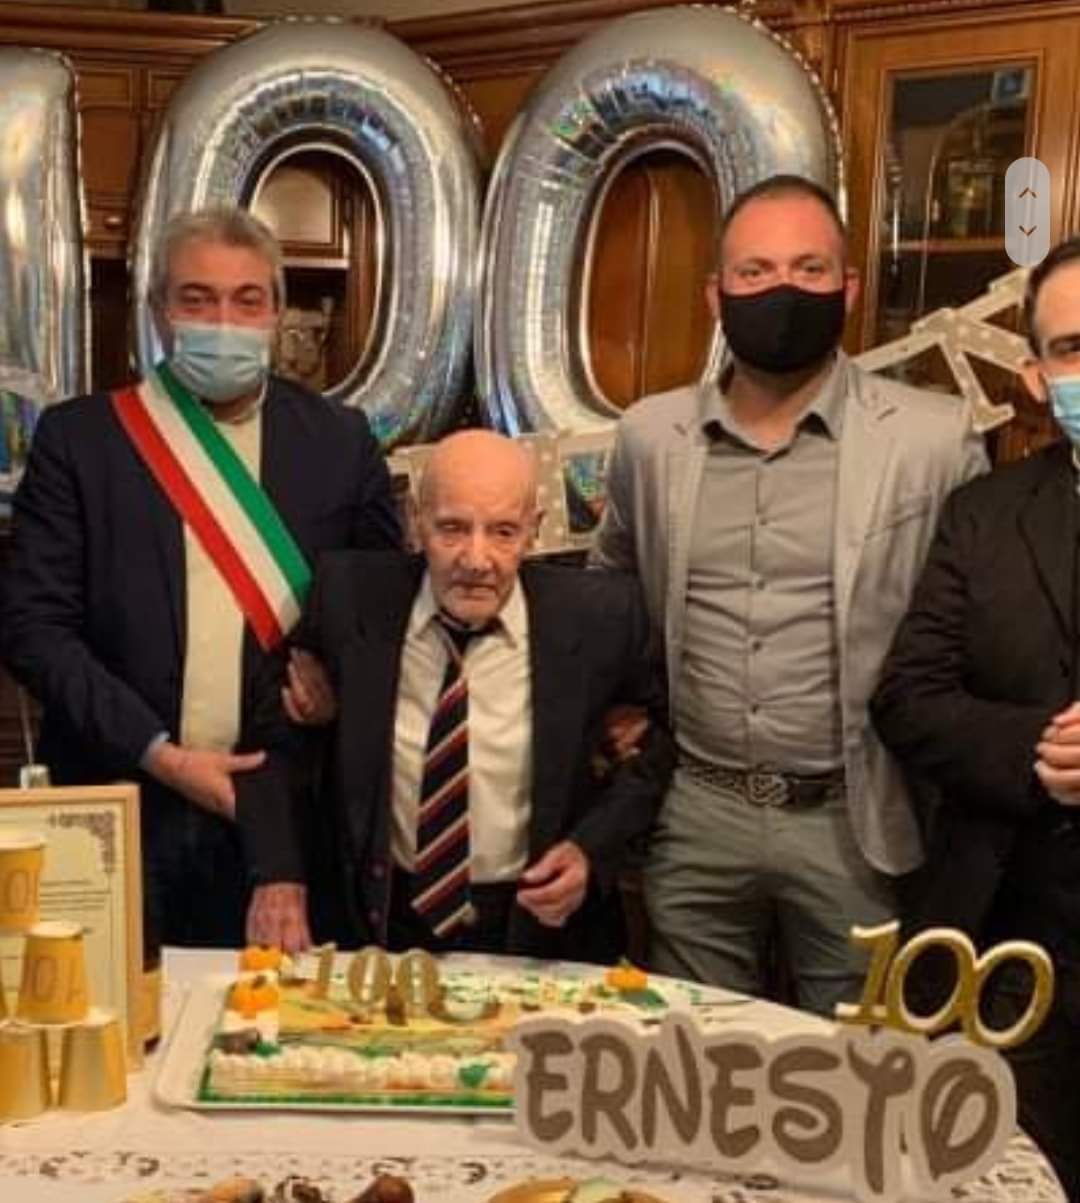 Nonno Ernesto compie 100 anni, virale il video in cui incoraggiava gli italiani